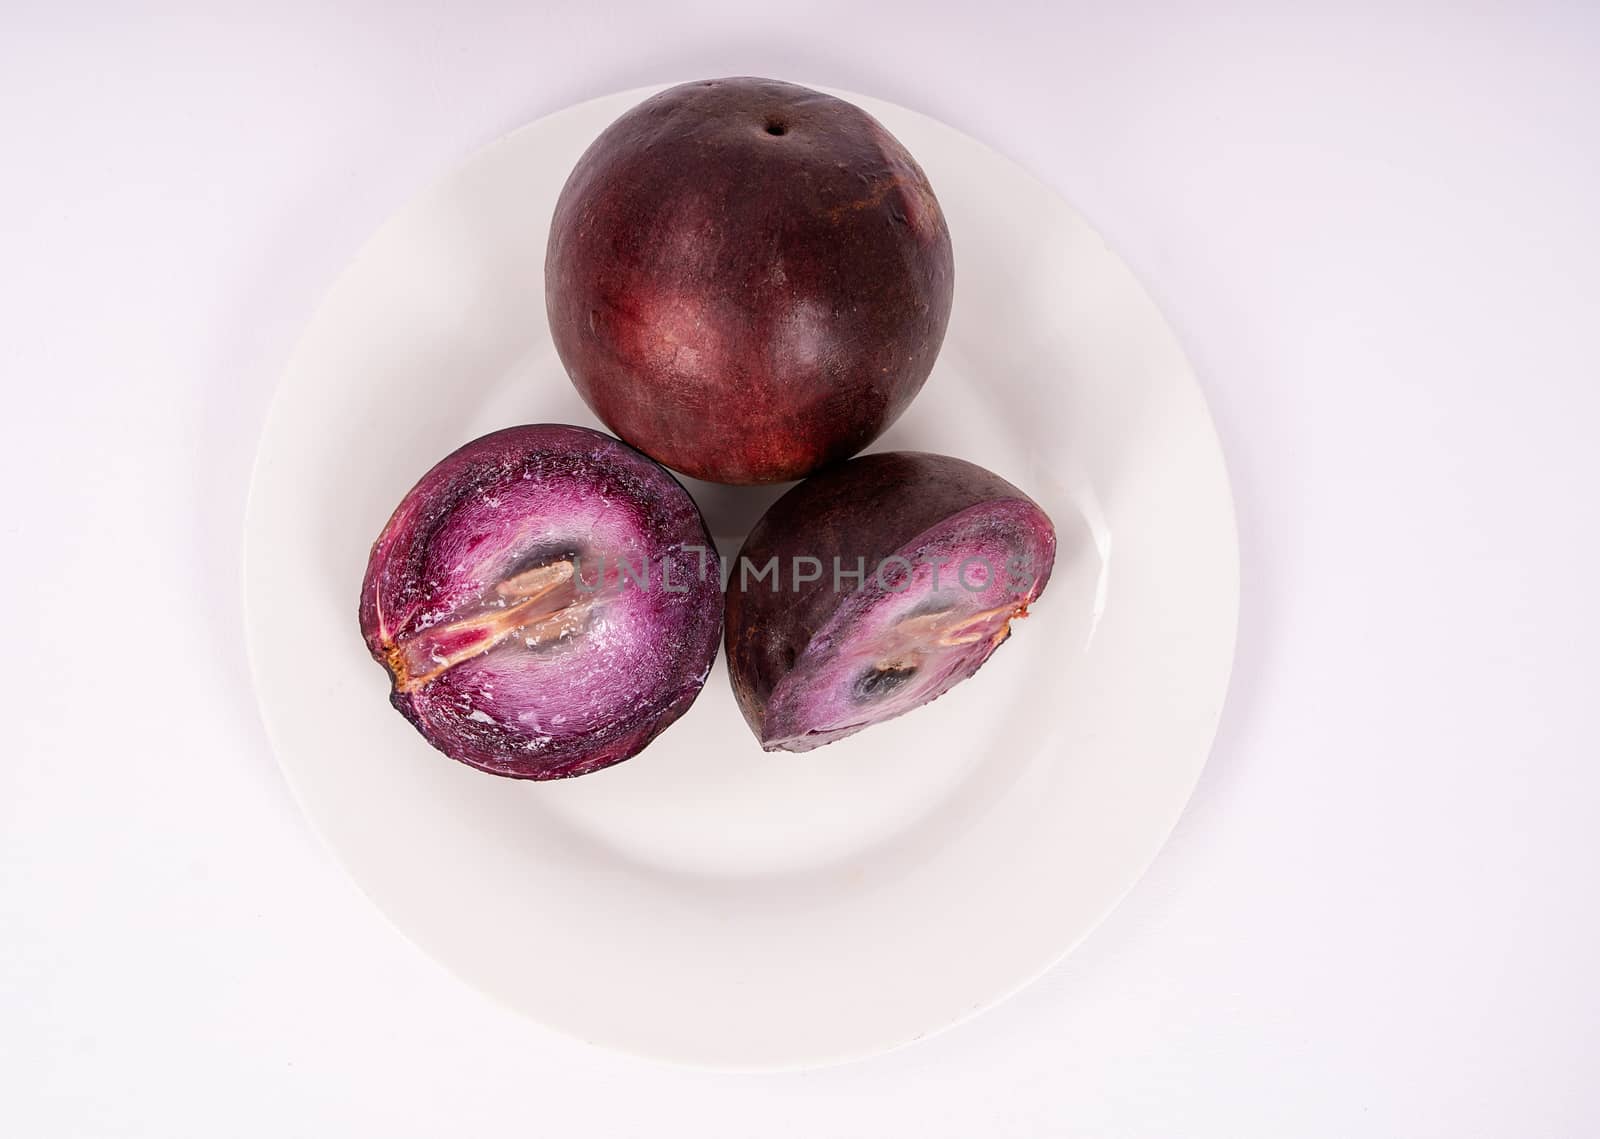 Caimito fruit by jrivalta